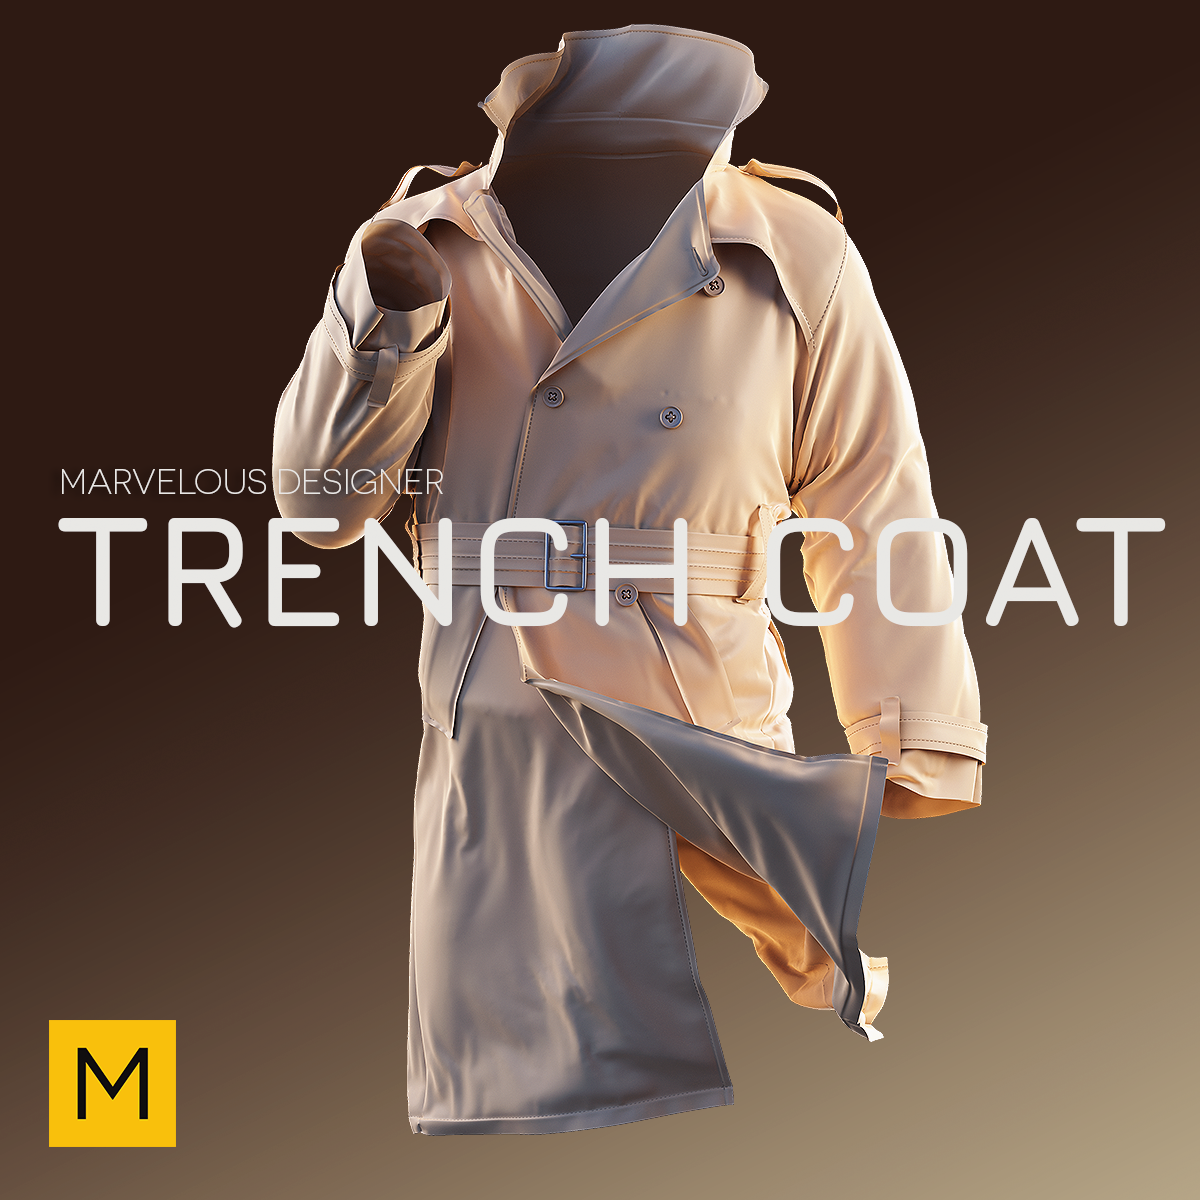 marvelous designer 3D Clothing trench coat 3d fashion 3d character cloth 3D cloth design 3d clothing 3d artist